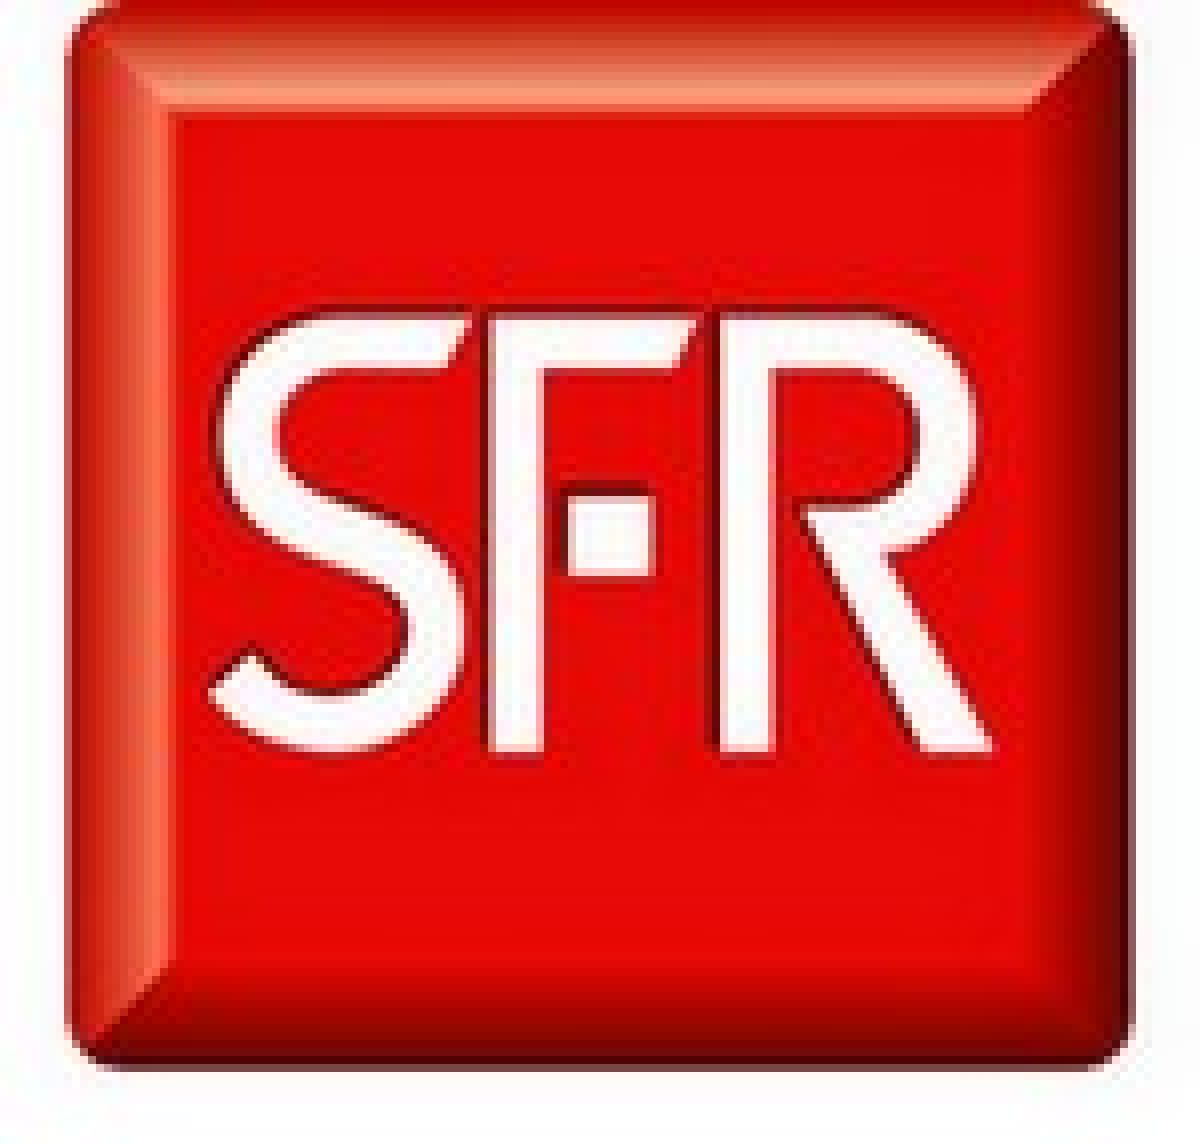 Les offres SFR en ADSL: début le 25 avril